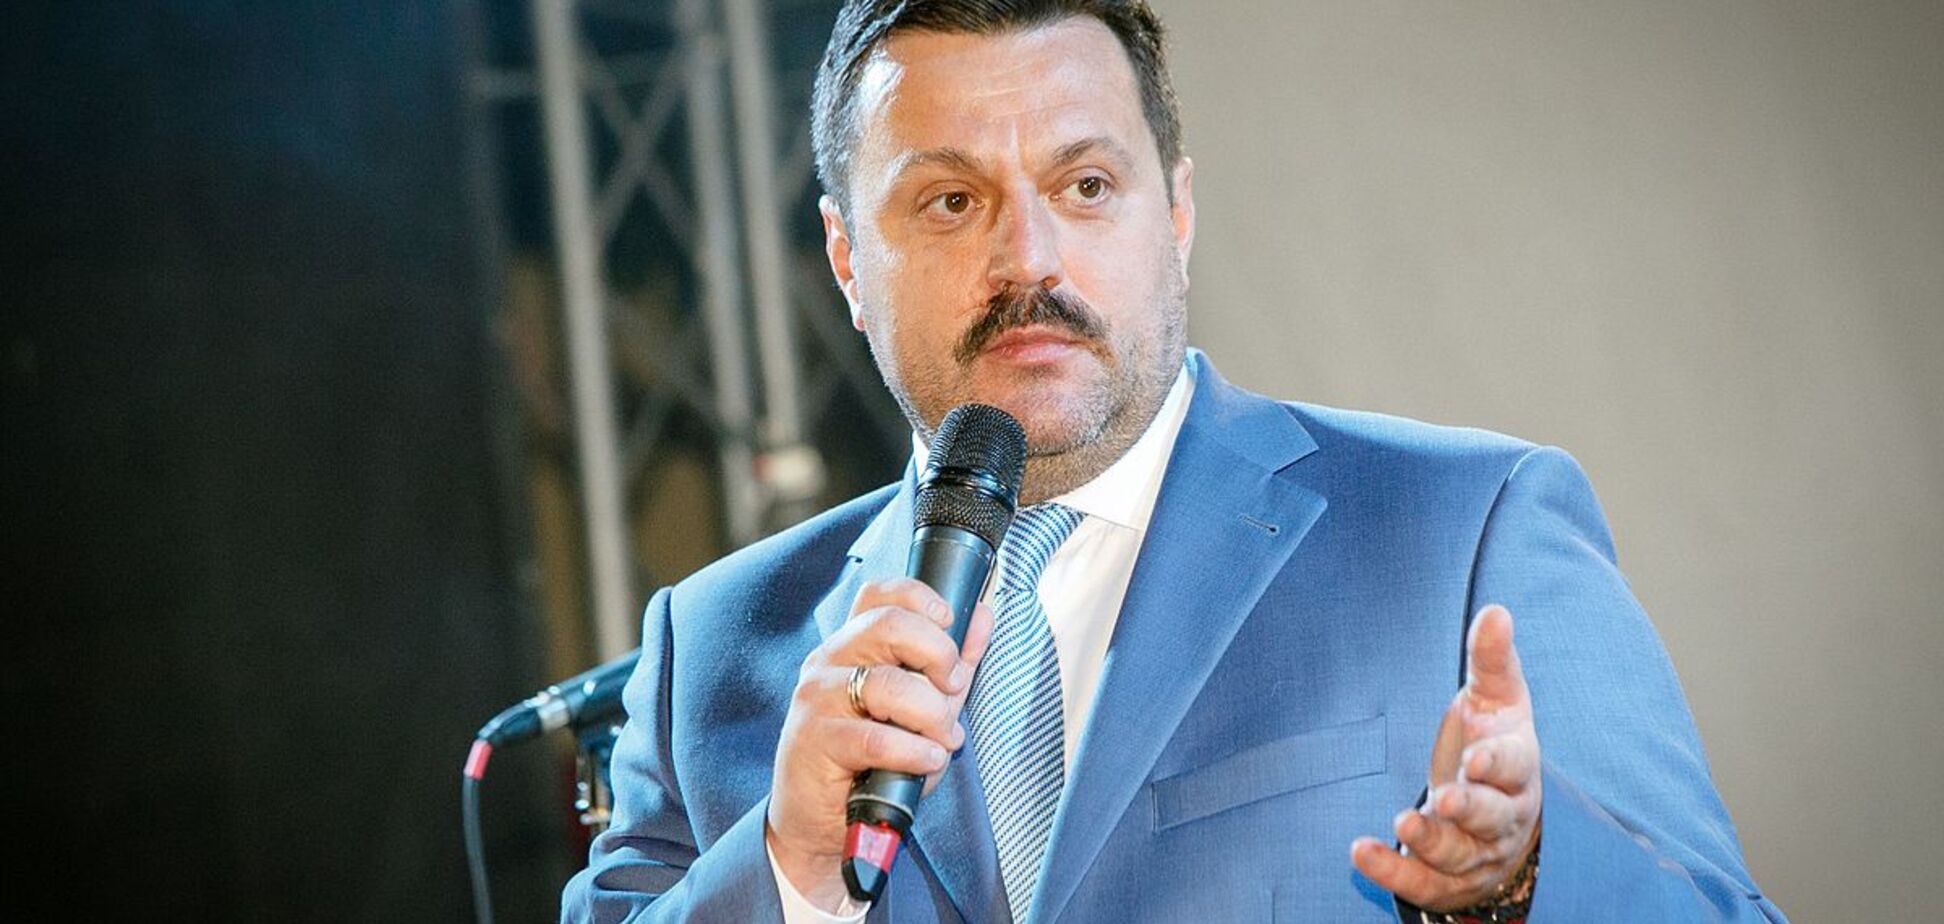 Деркач из-за отсутствия главы Минздрава подал в суд на глав коалиционных фракций